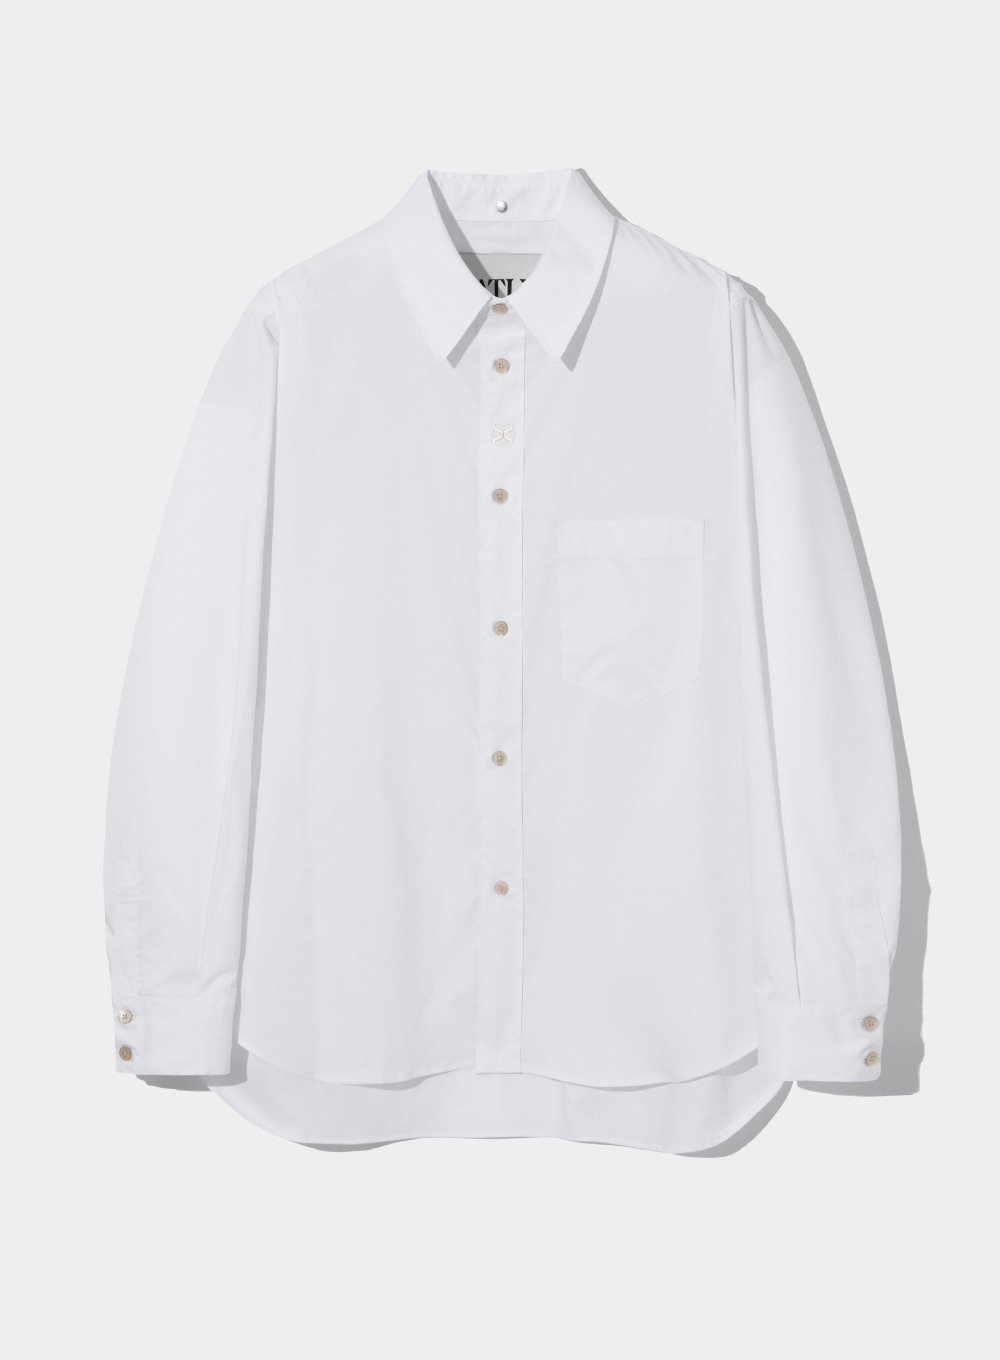 [2월 17일 예약배송]Satur All Day Logo Basic Shirts - Classic White